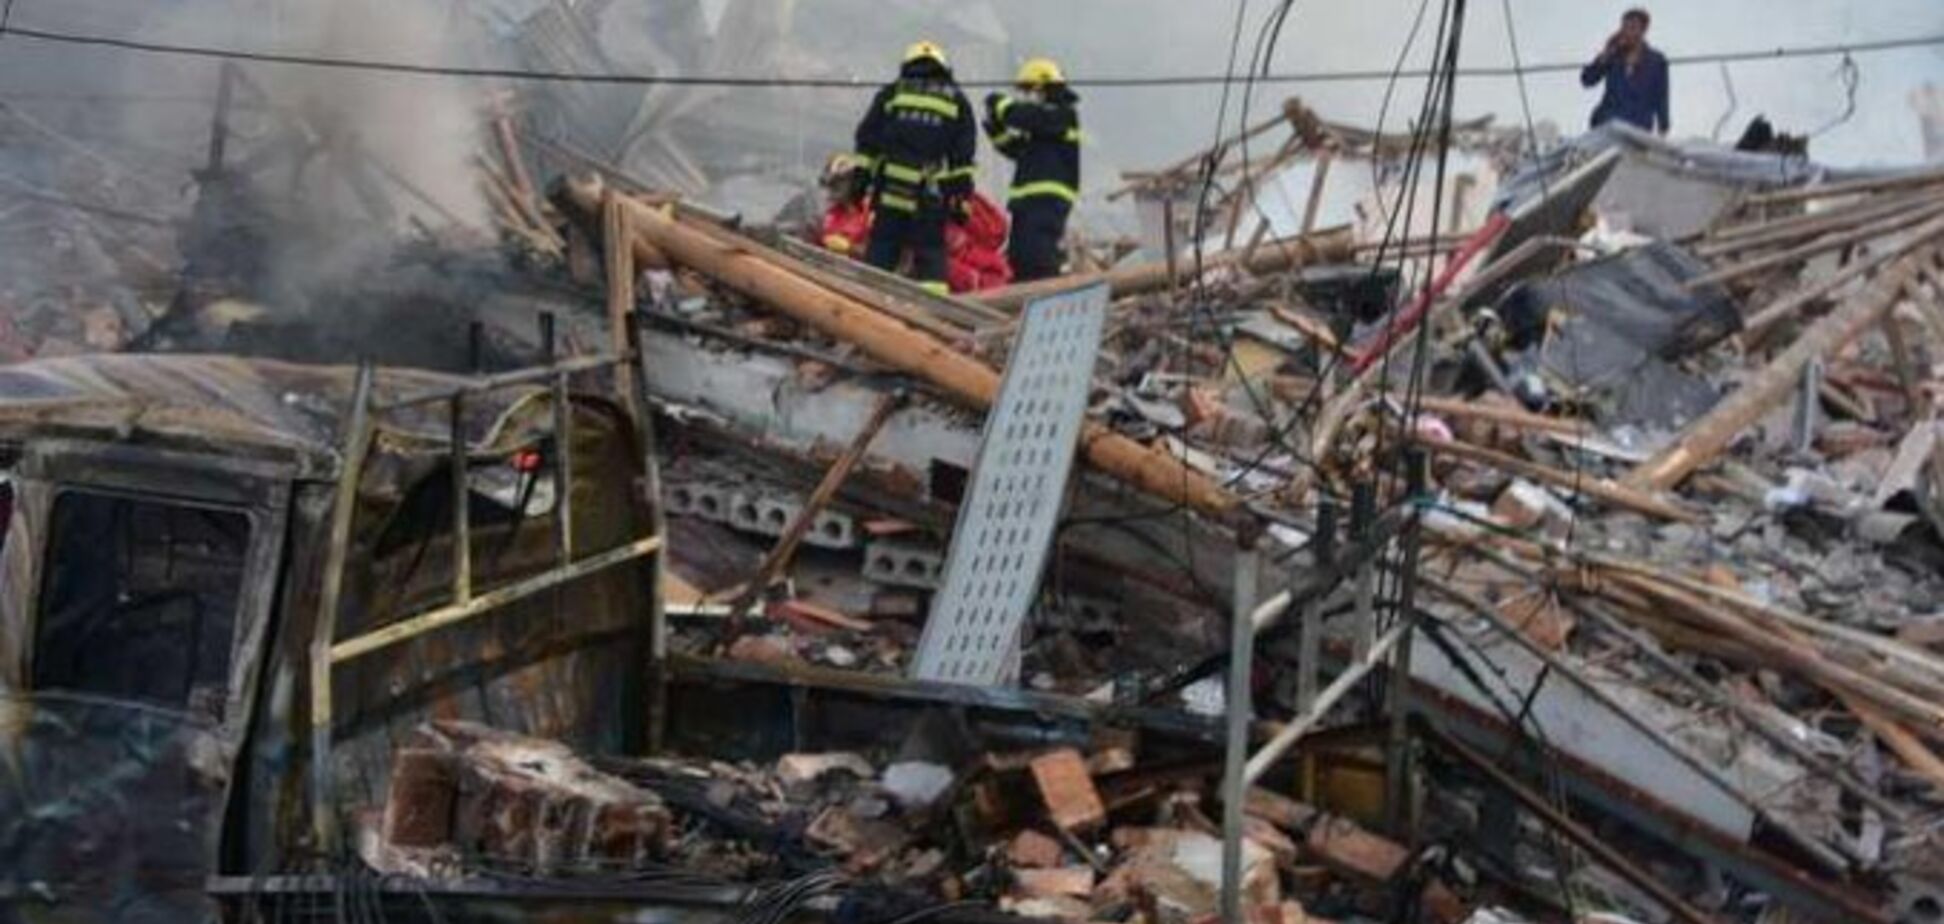 У Китаї вибухнув бензовоз і пролетів над будинками: 19 загиблих, більш ніж сотня постраждалих. Фото та відео 18+